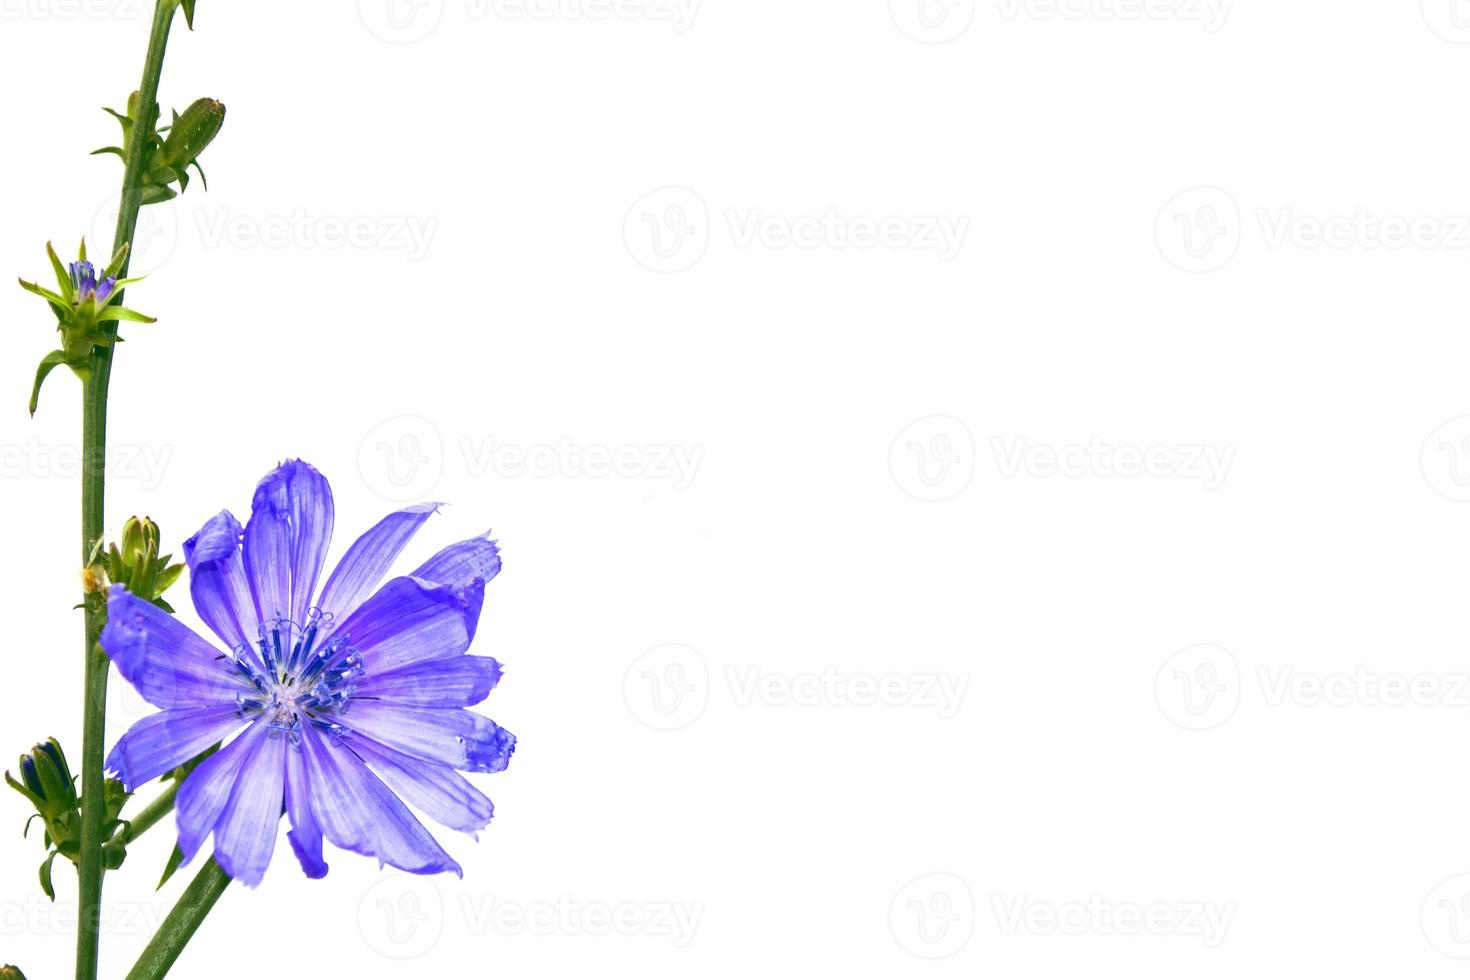 fiore di cicoria con foglia isolato su sfondo bianco foto